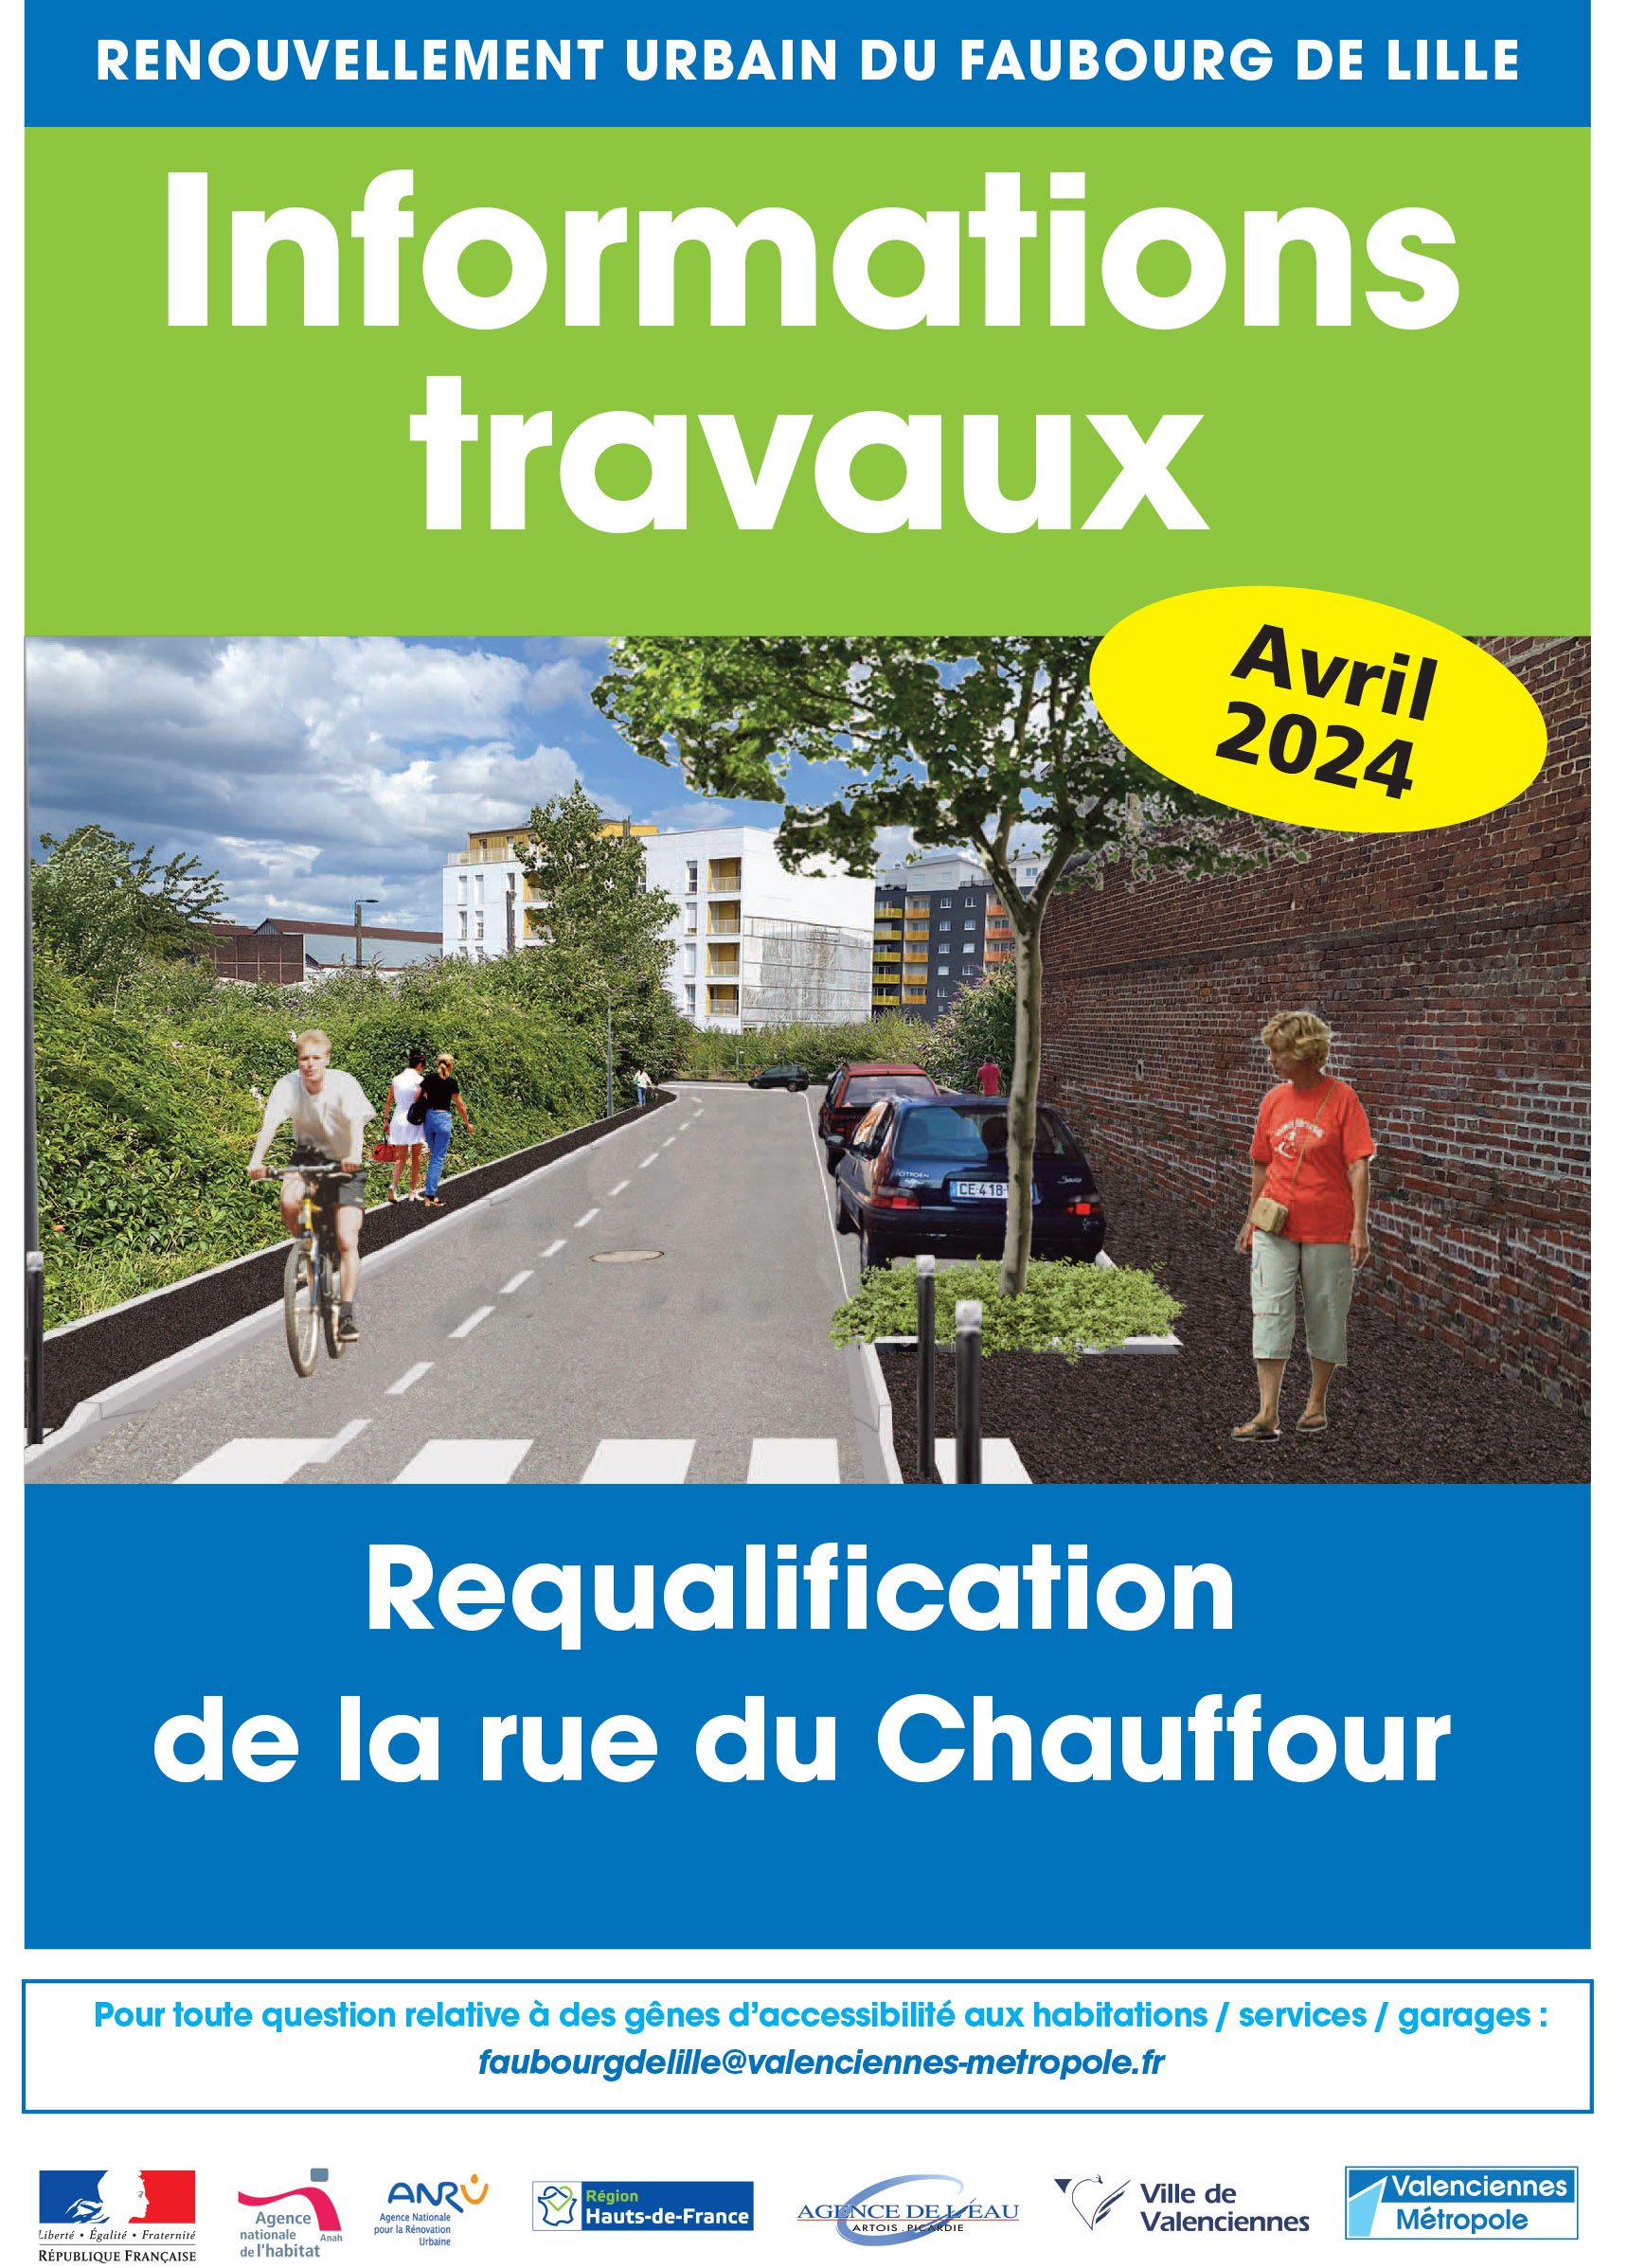 Infos travaux : Requalification de la rue du Chauffour